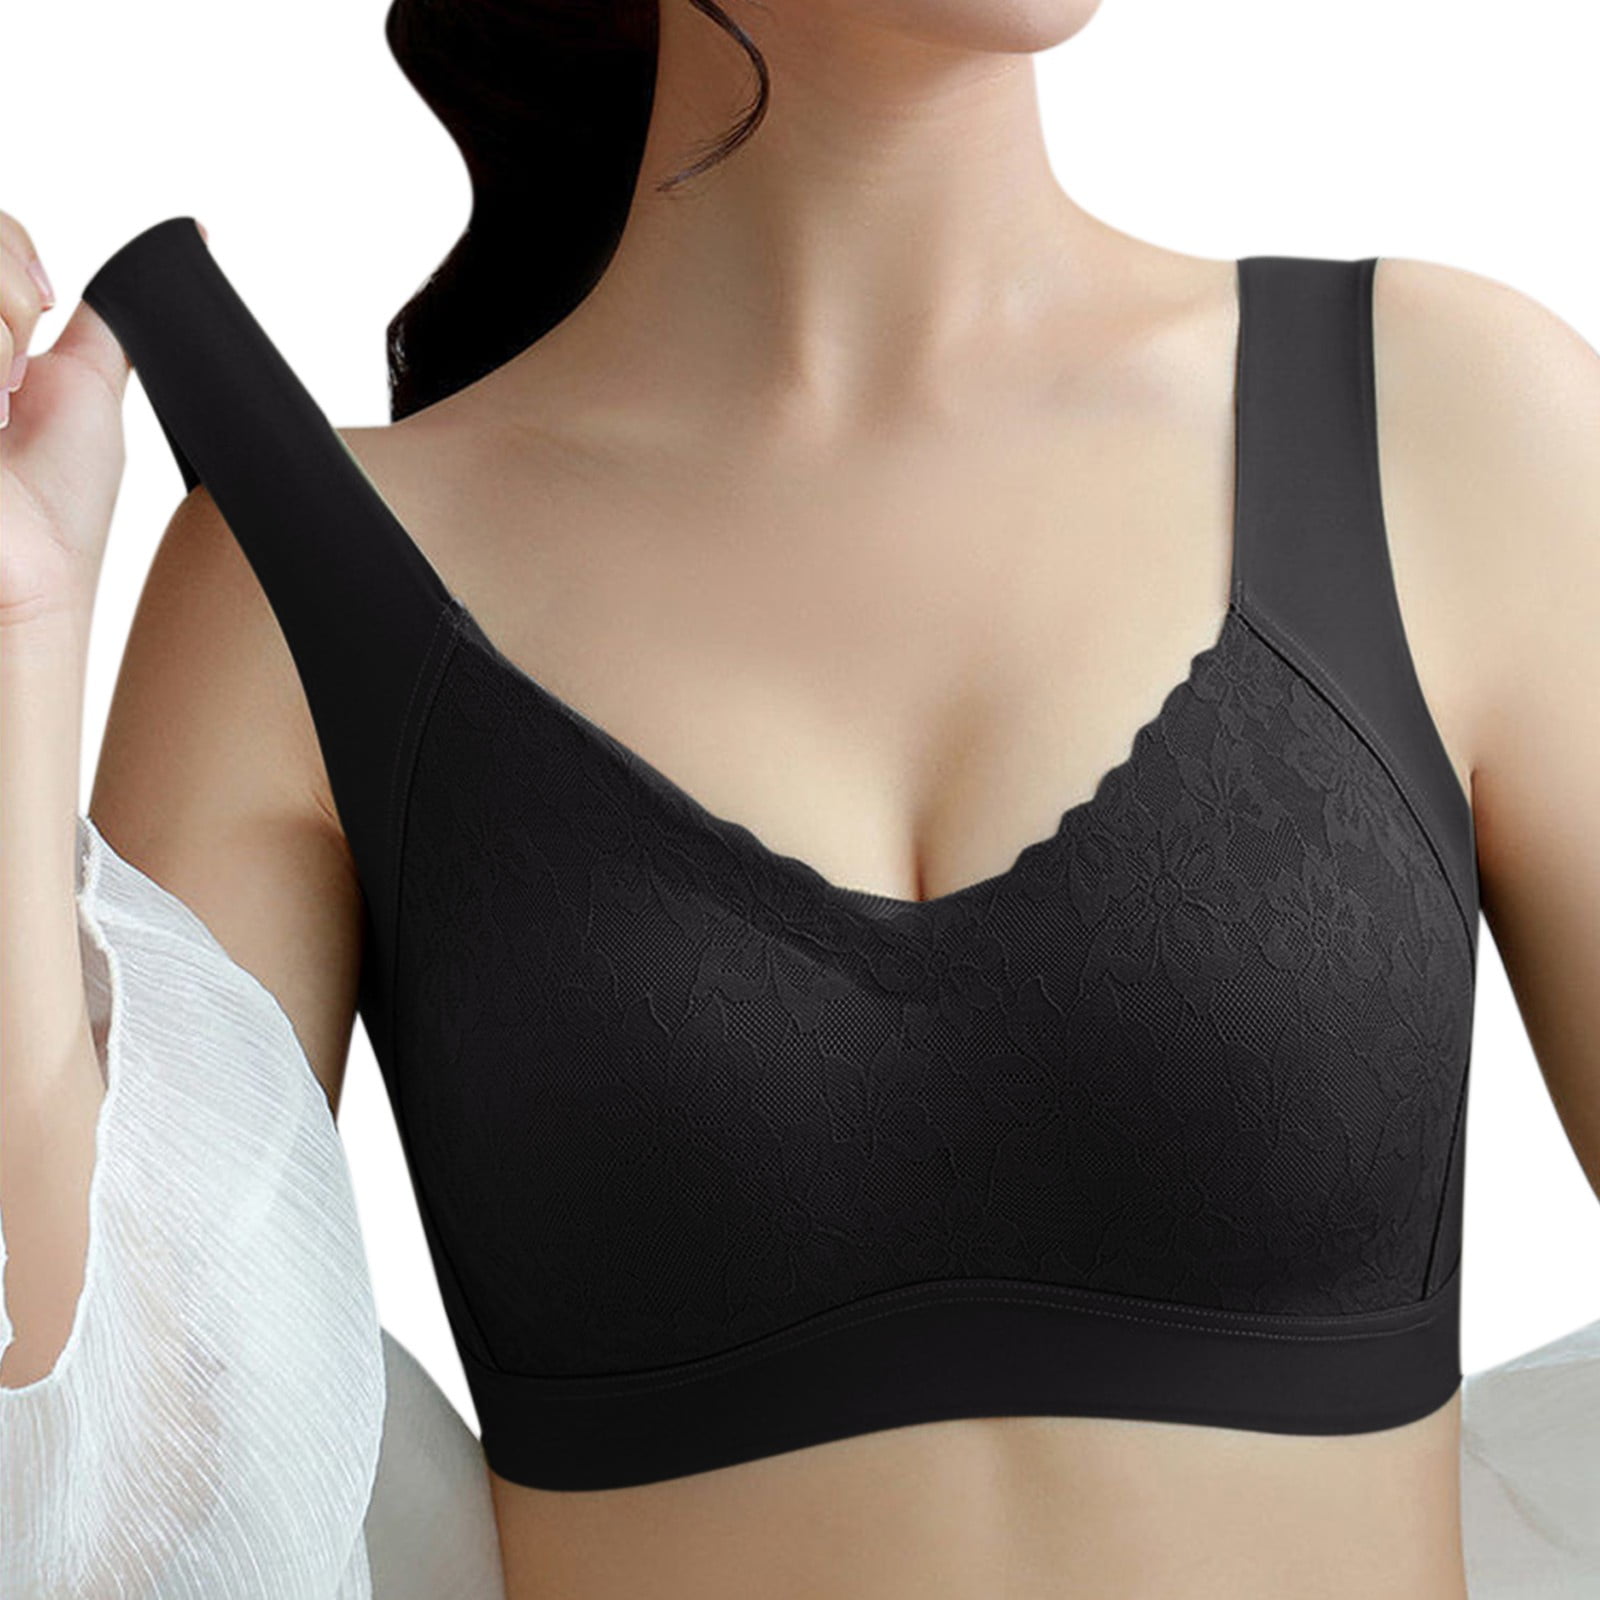 adviicd Plus Size Bras for Women Women's Push Up Lace Bra